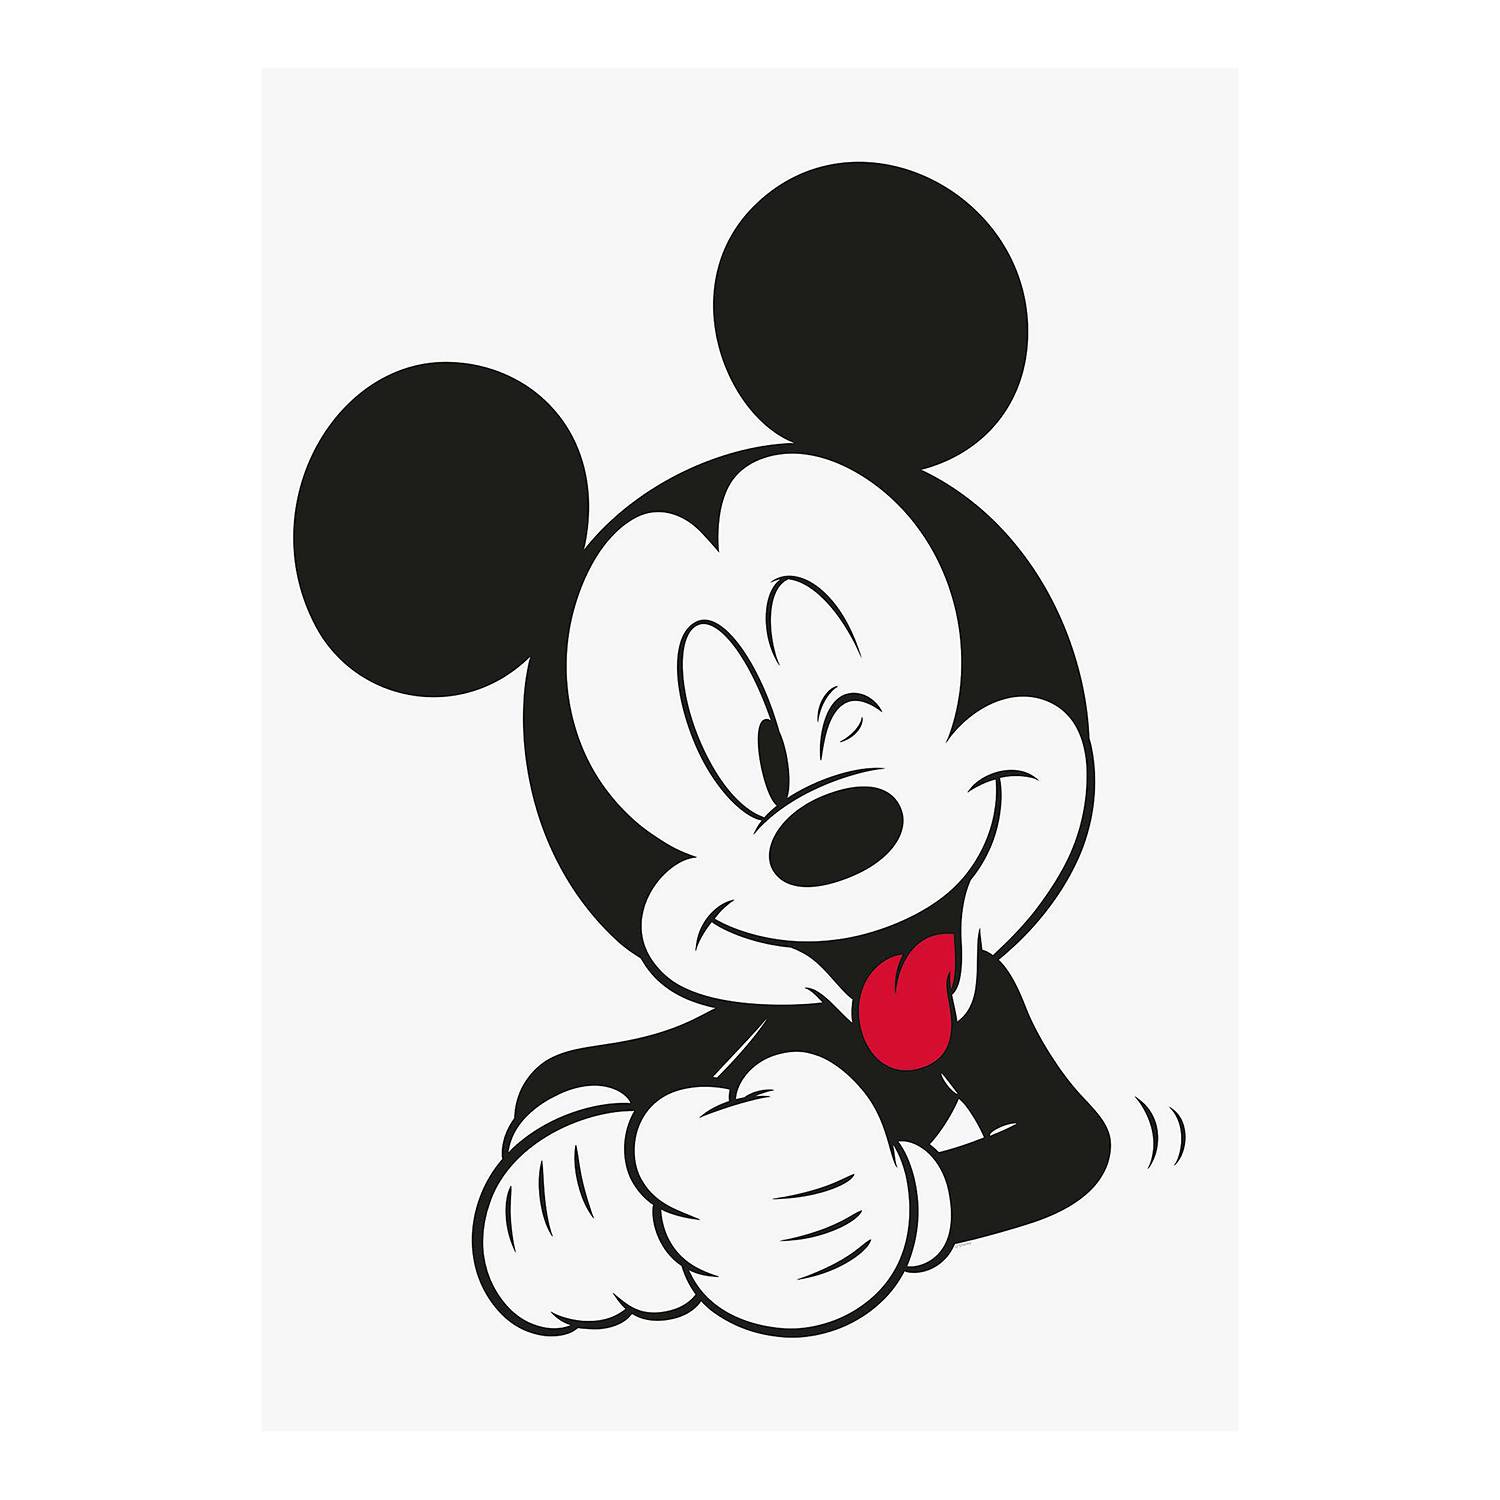 Wandbild Mickey Mouse Funny kaufen | home24